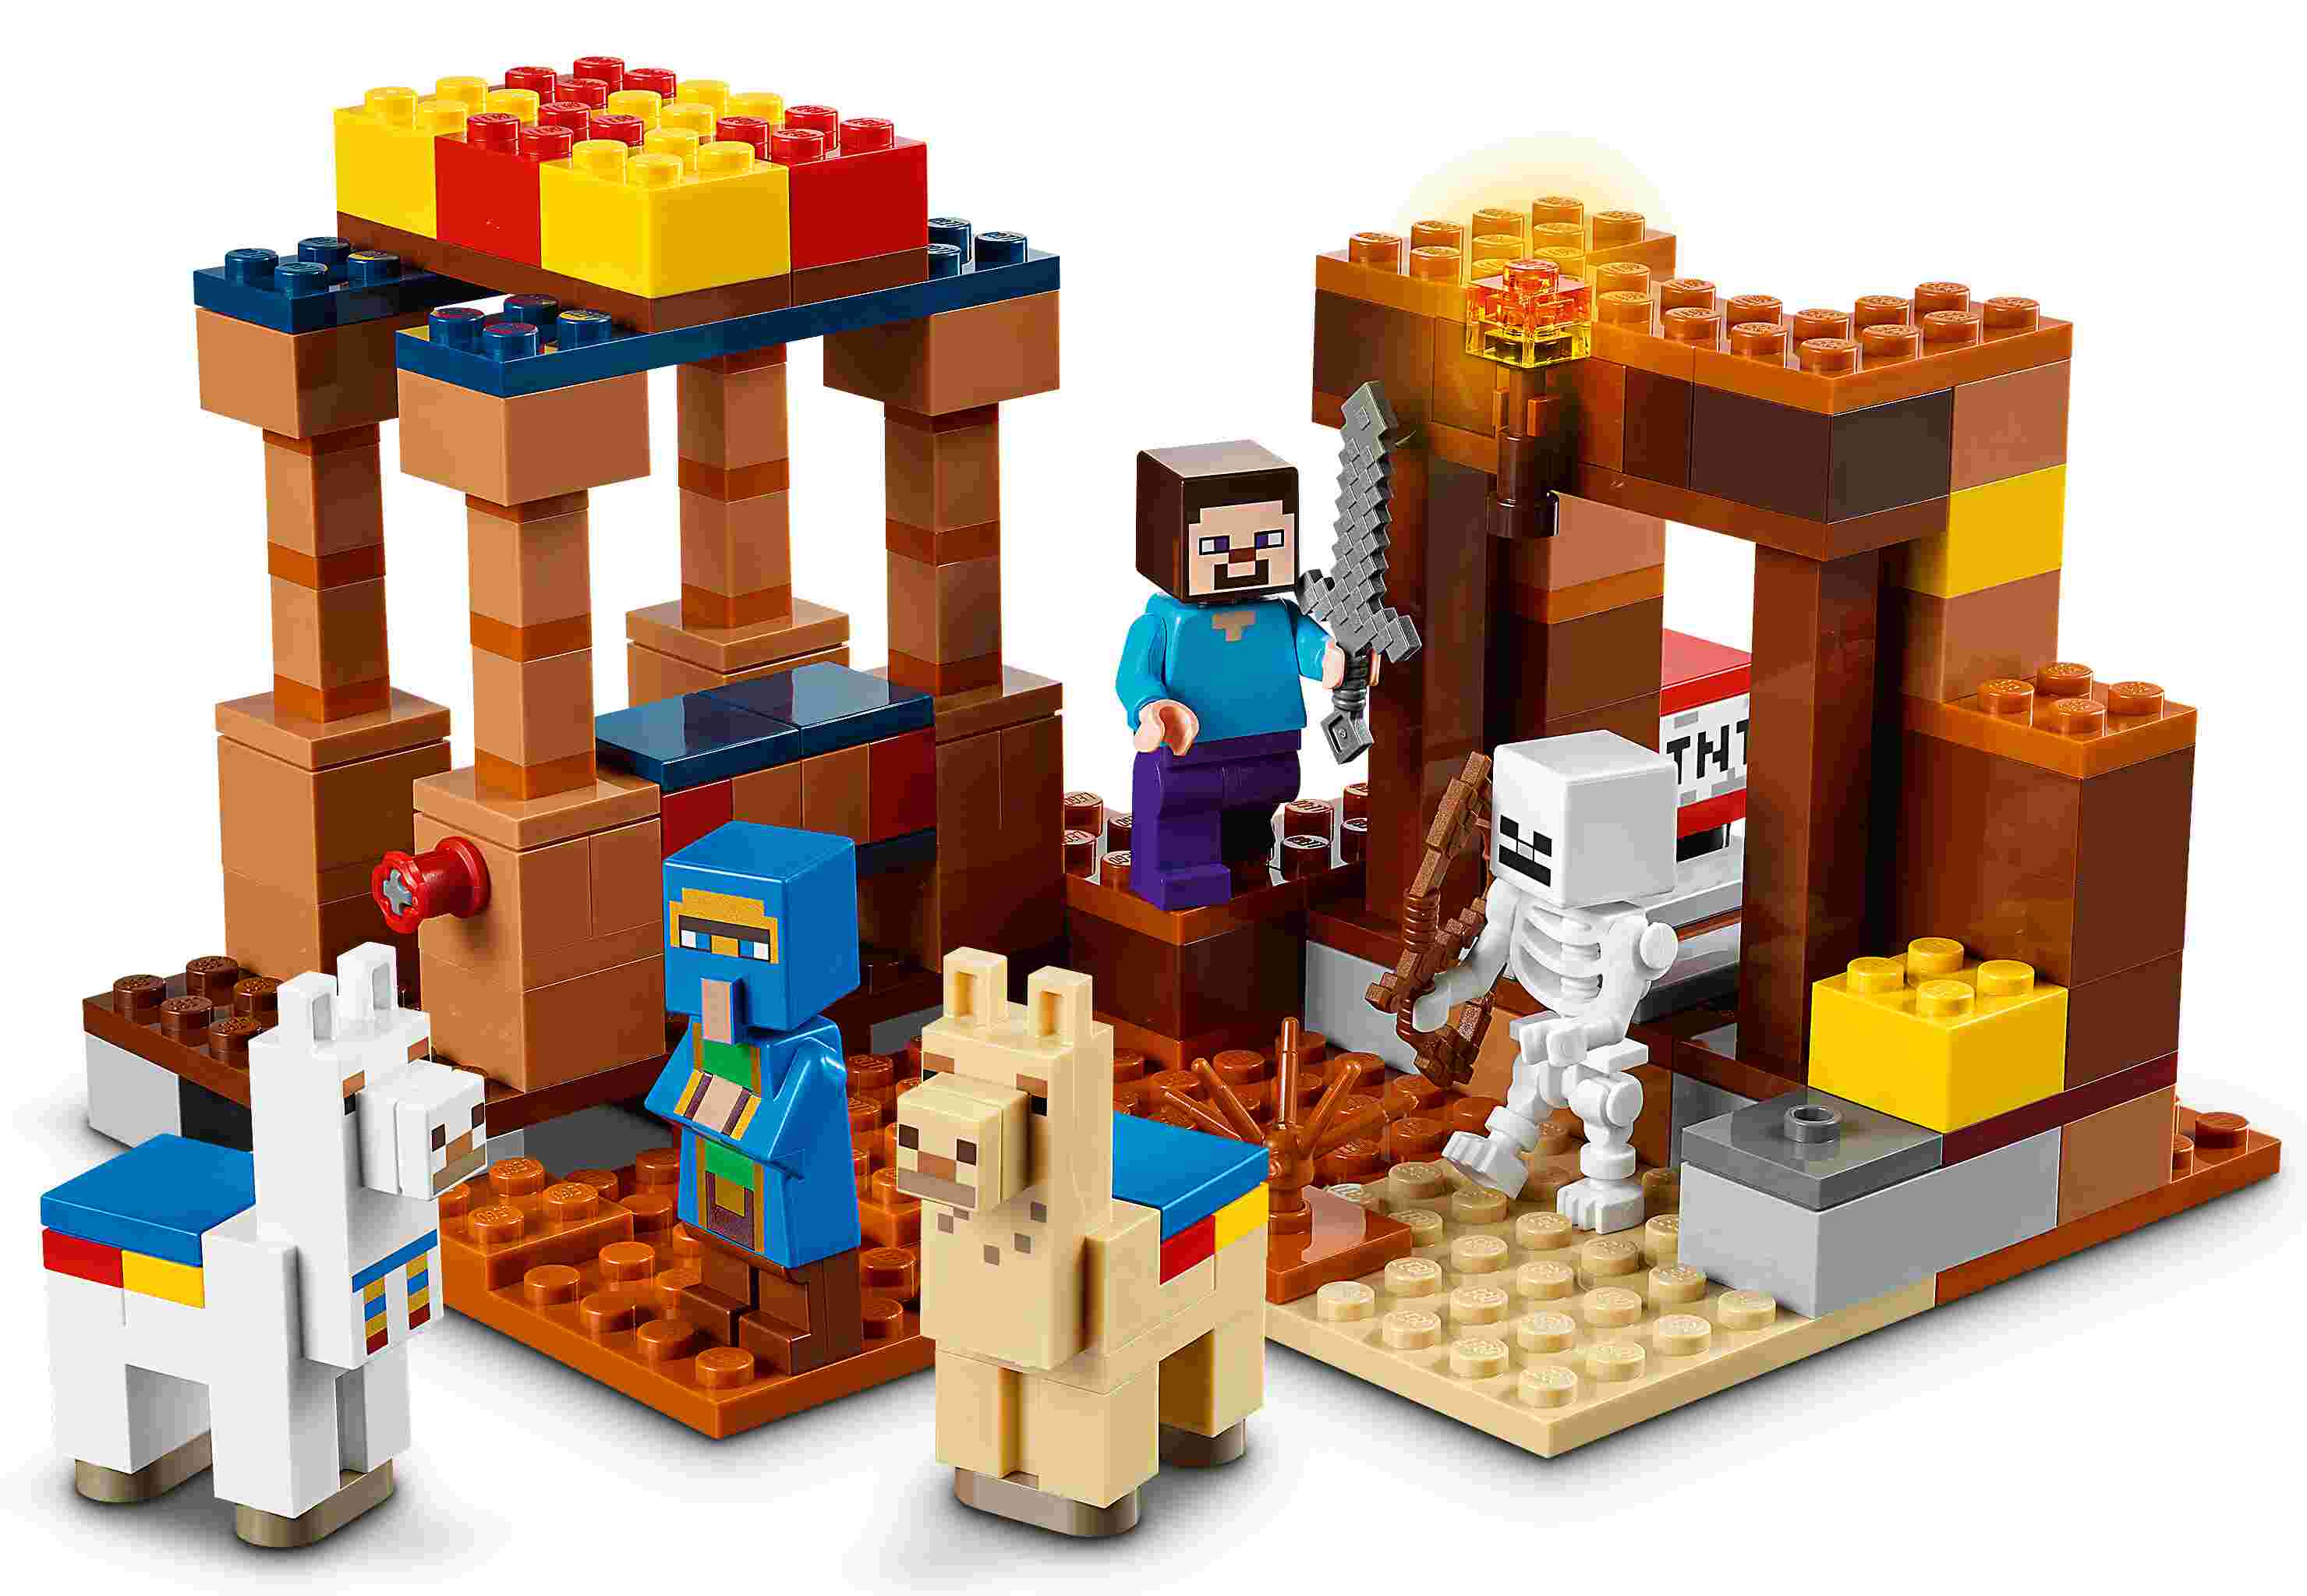 LEGO 21167 Minecraft Der Handelsplatz, Steve, Lamas, Skelett